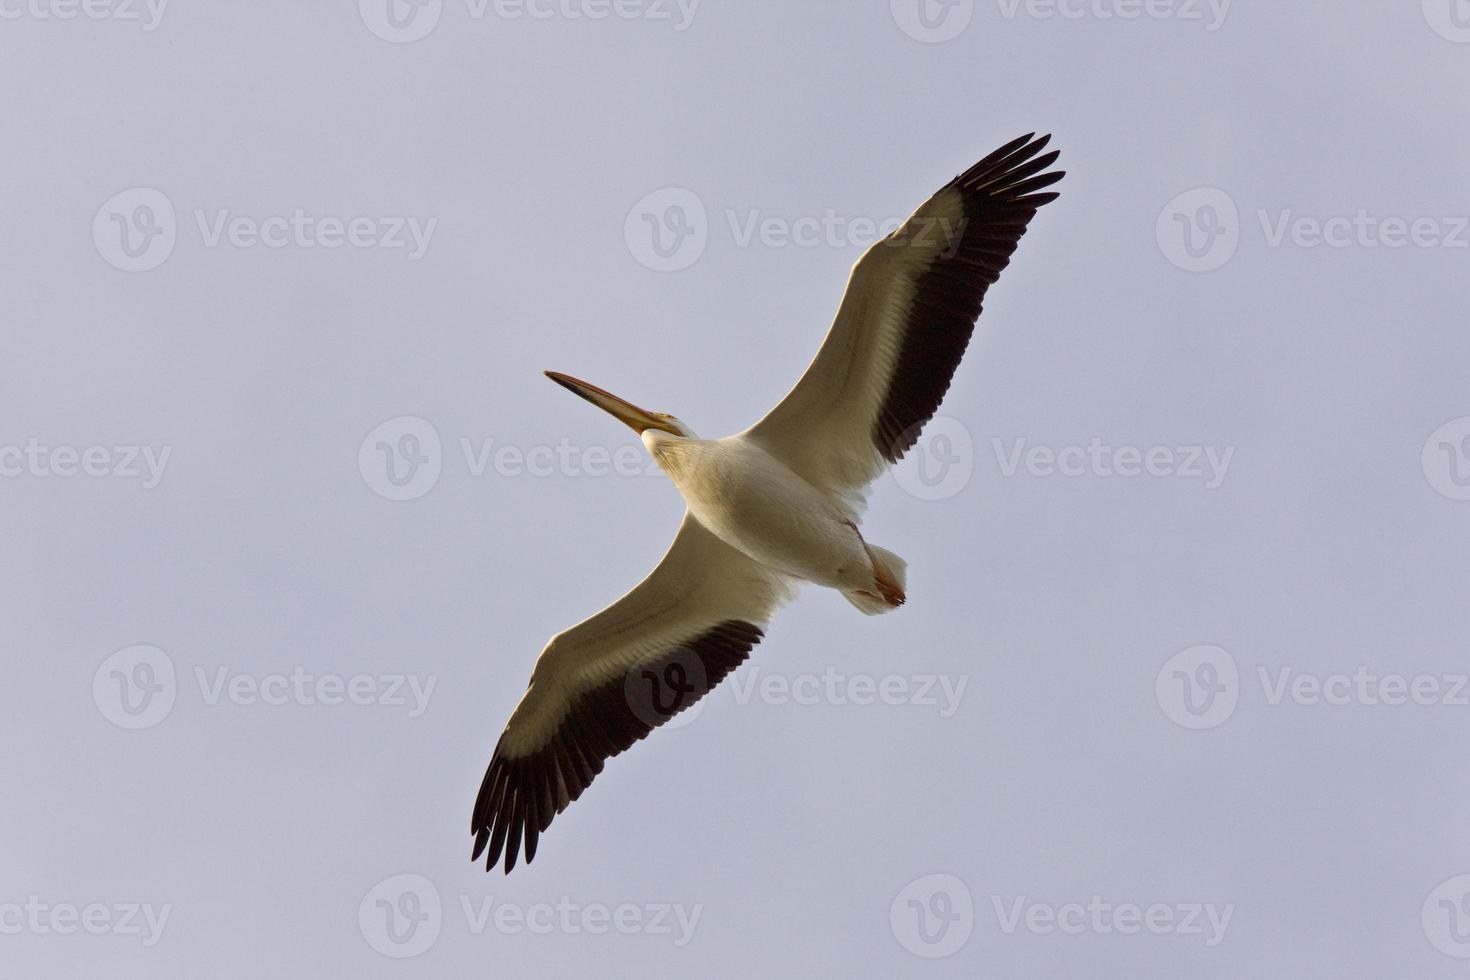 amerikansk vit pelikan under flygning Kanada foto